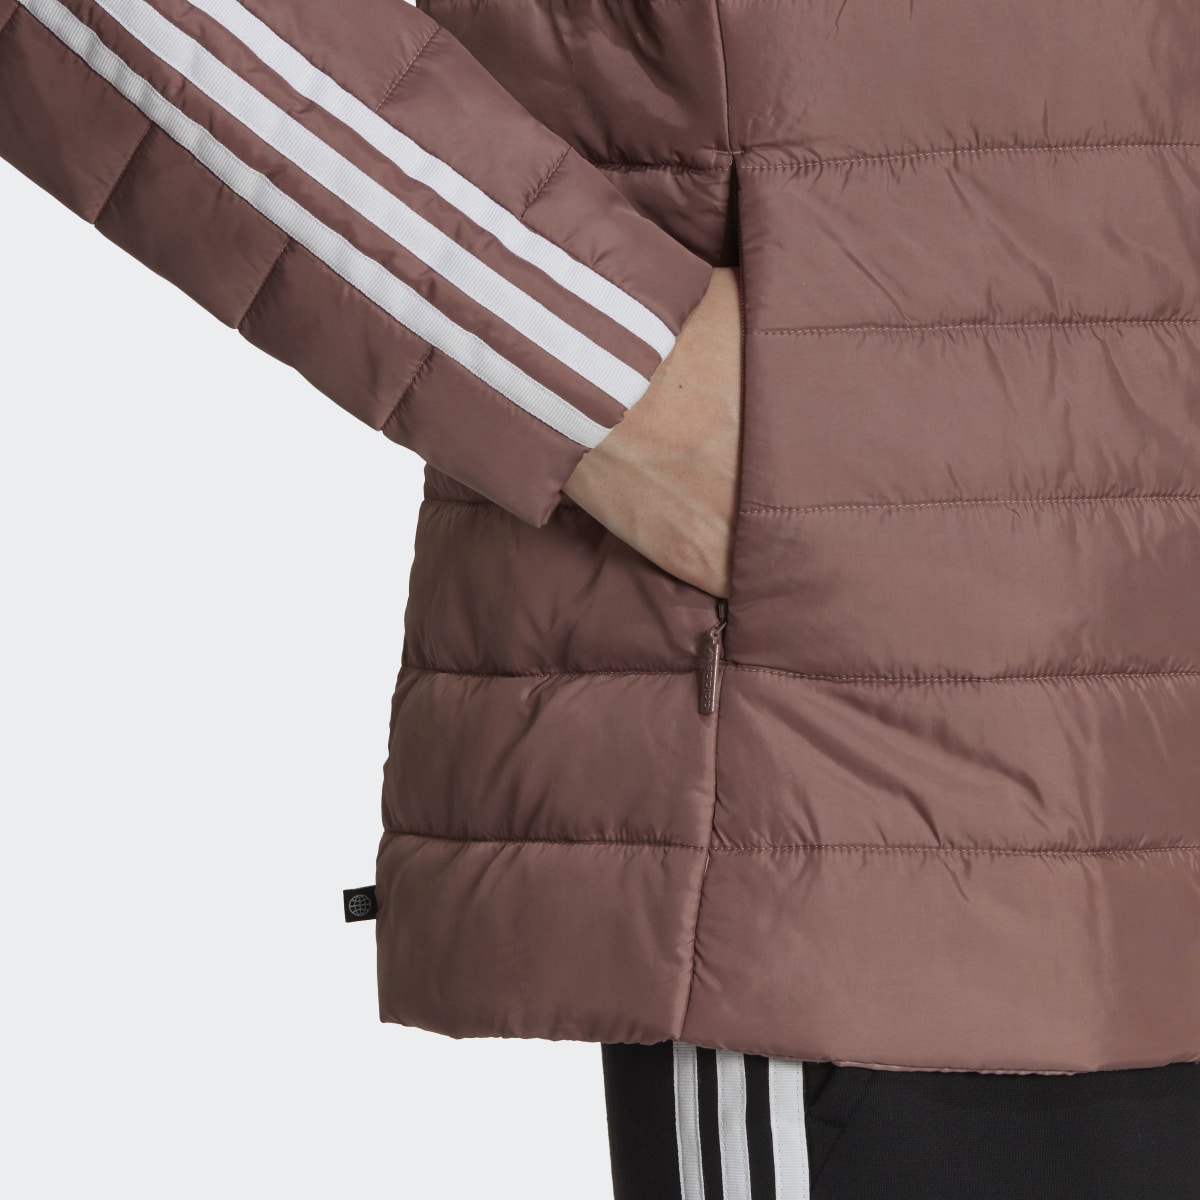 Adidas Hooded Premium Slim Jacket. 7